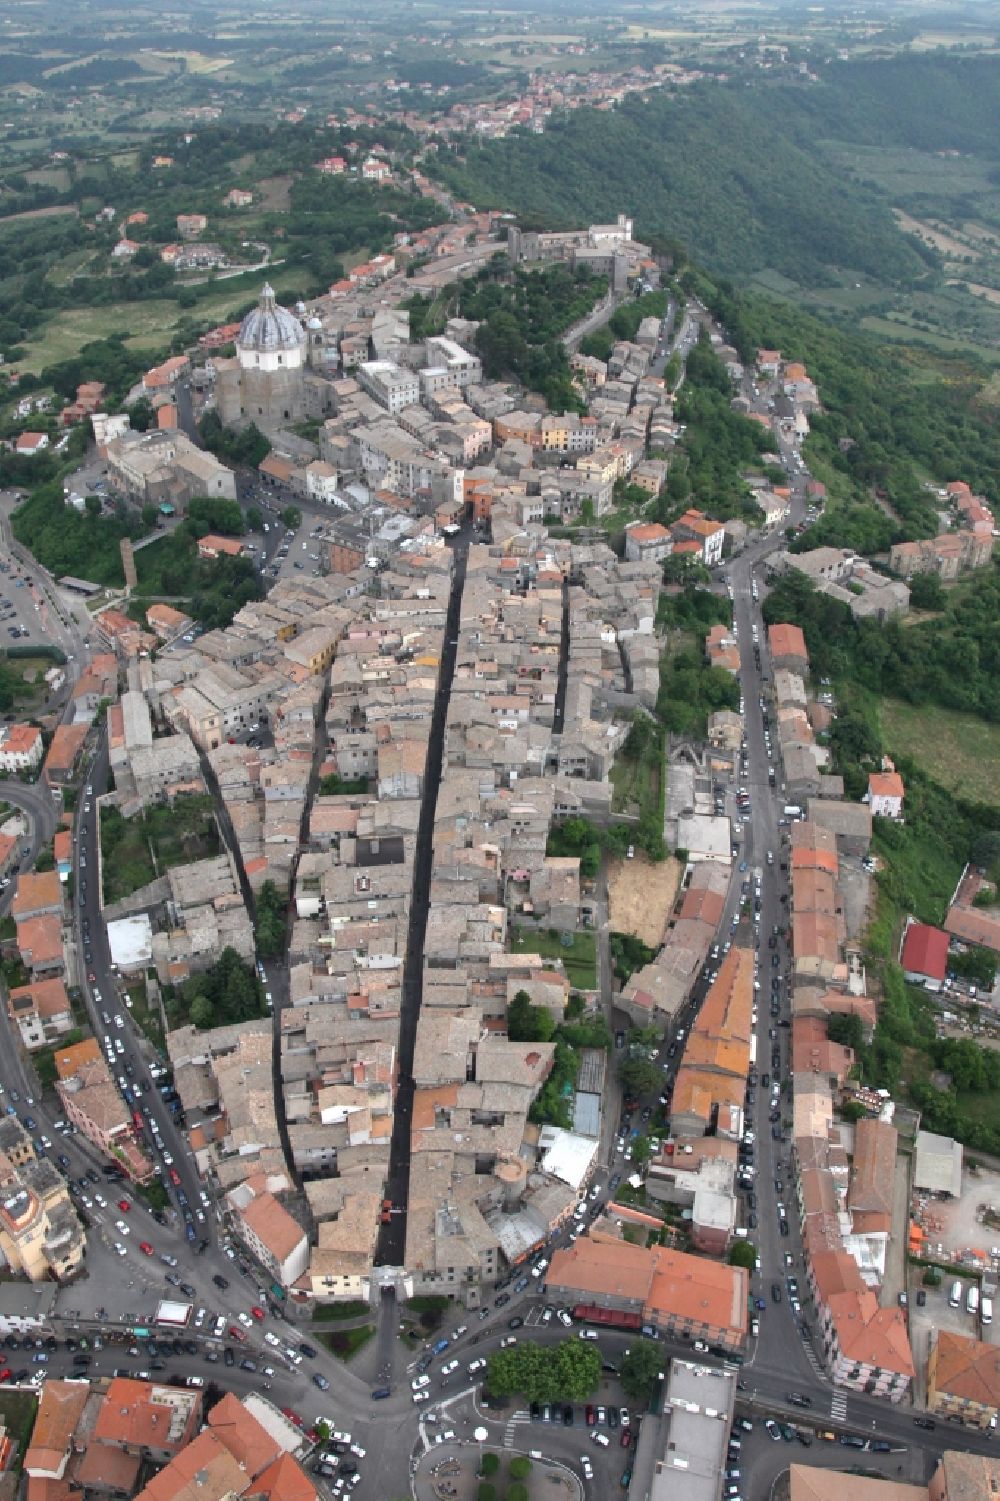 Montefiascone von oben - Altstadtbereich und Innenstadtzentrum in Montefiascone in Latium in Italien